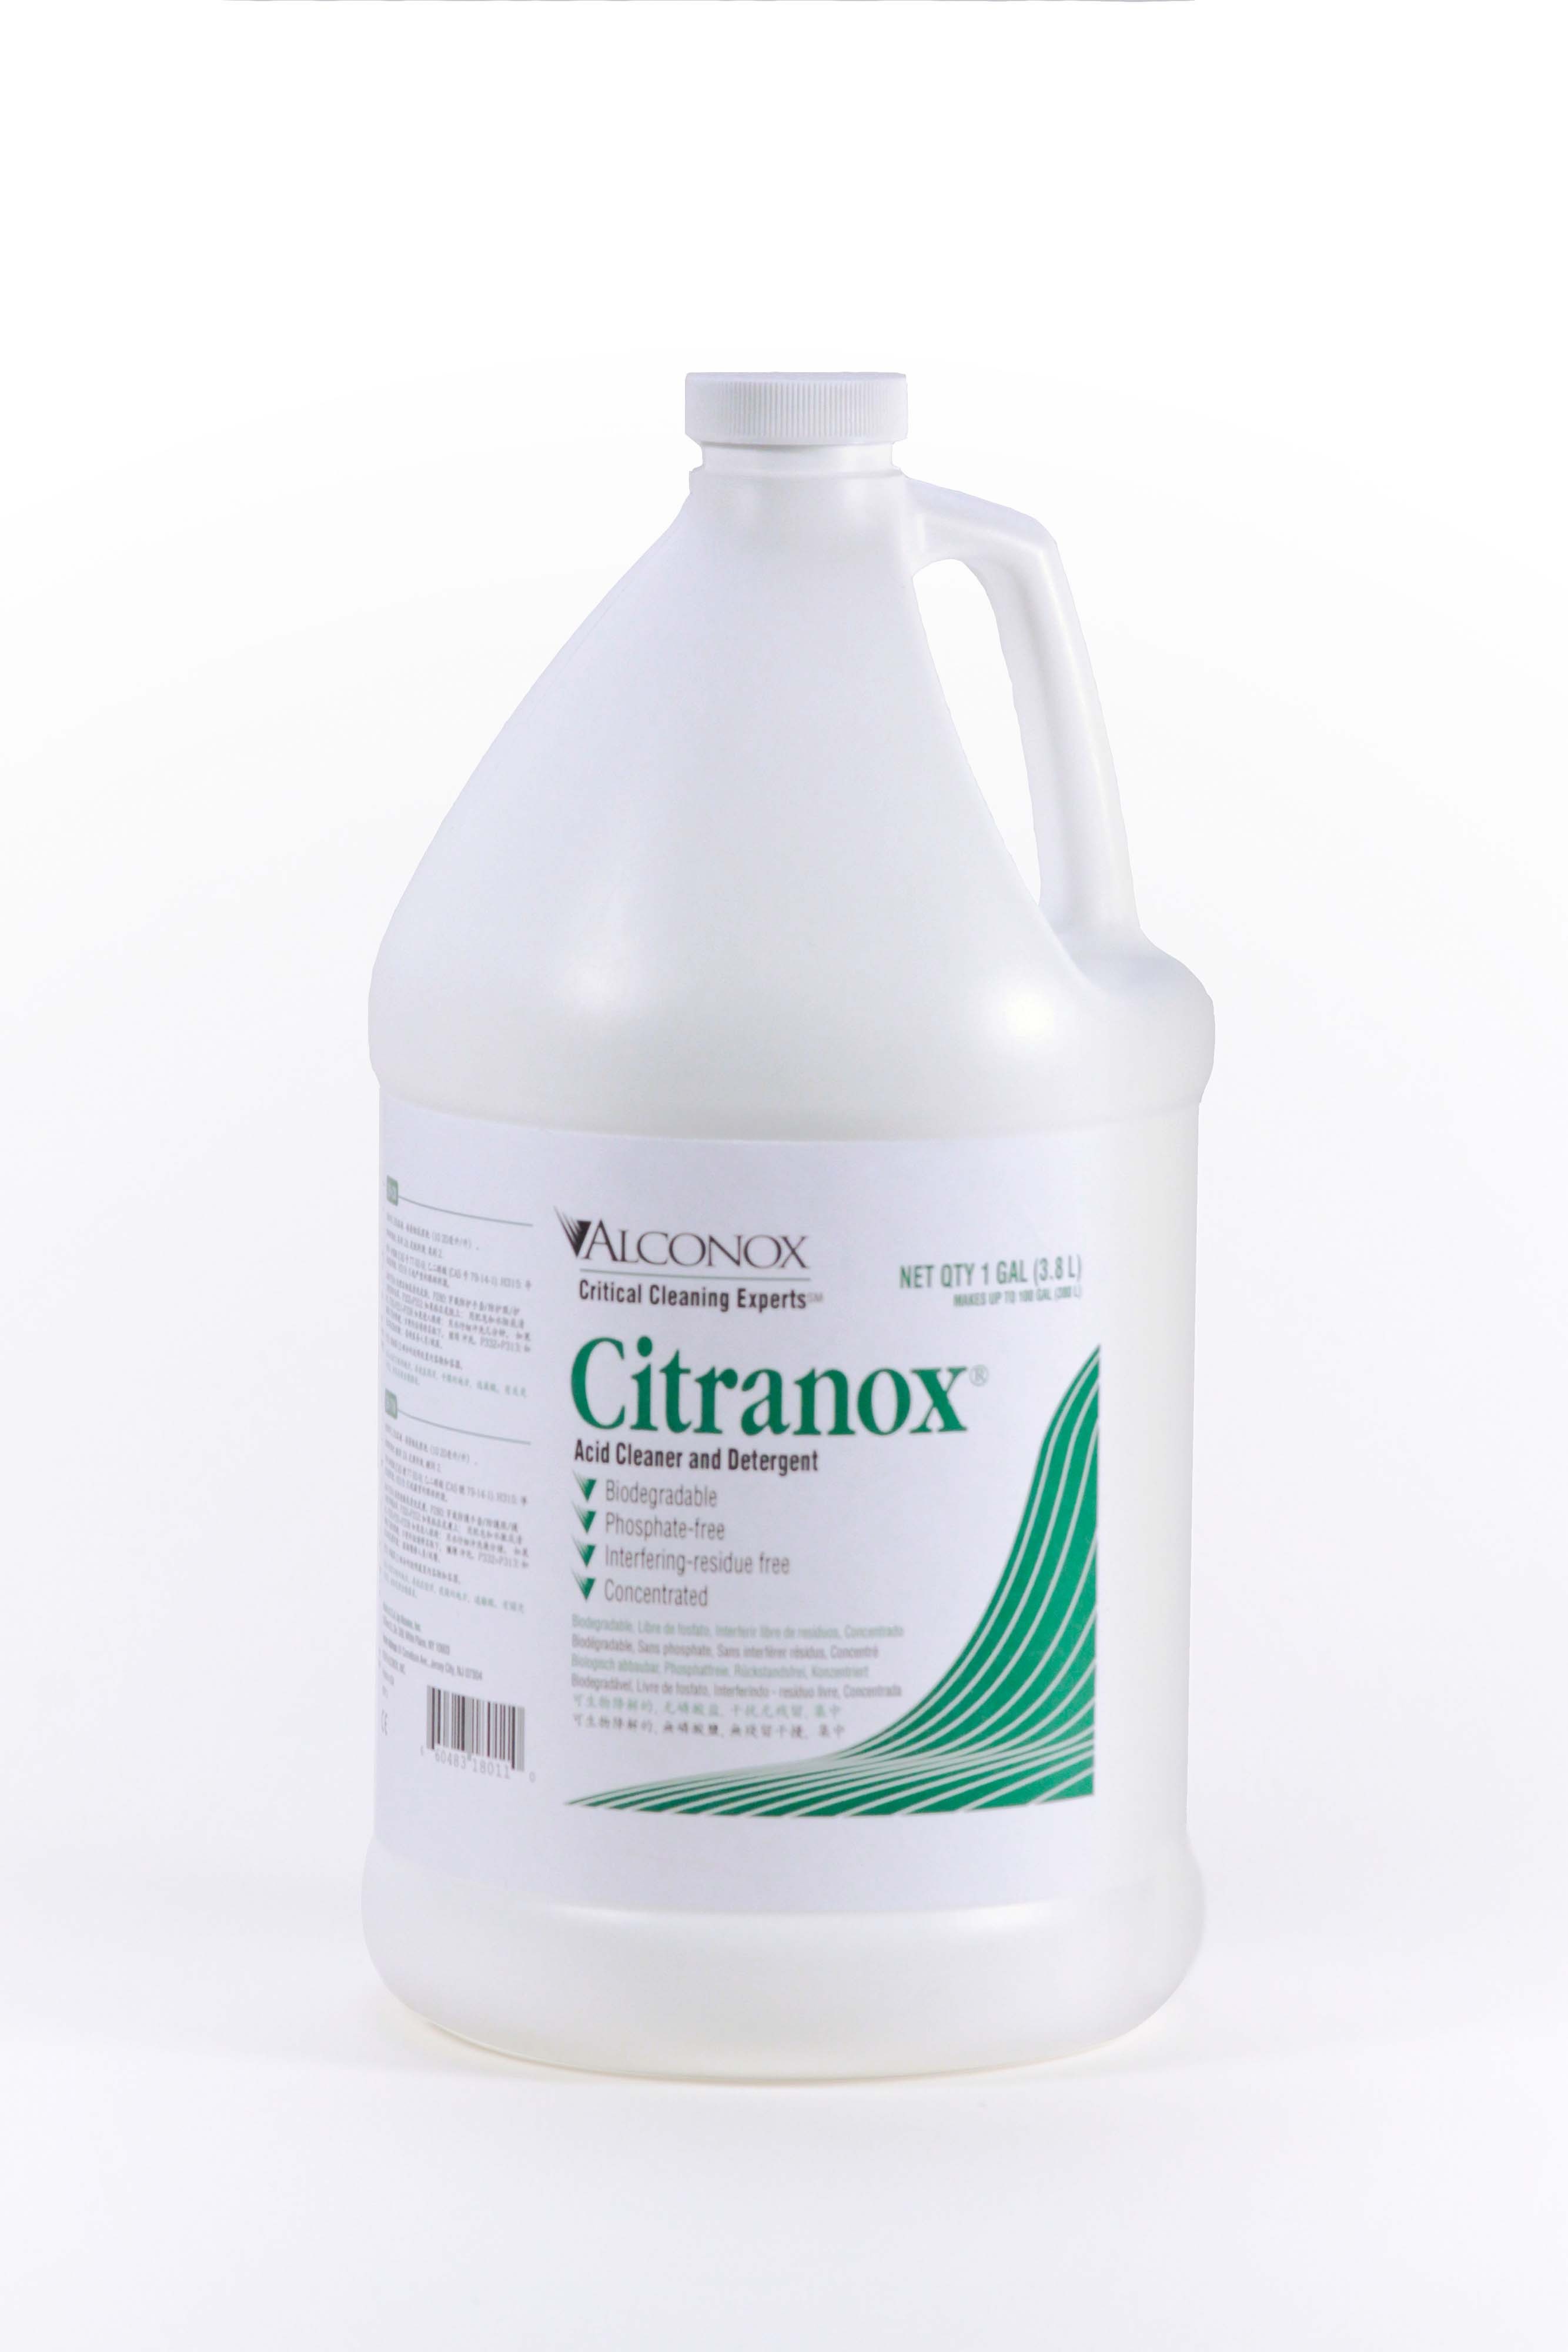 Citranox Liquid Acid Cleaner and Detergent 4x1 gal case